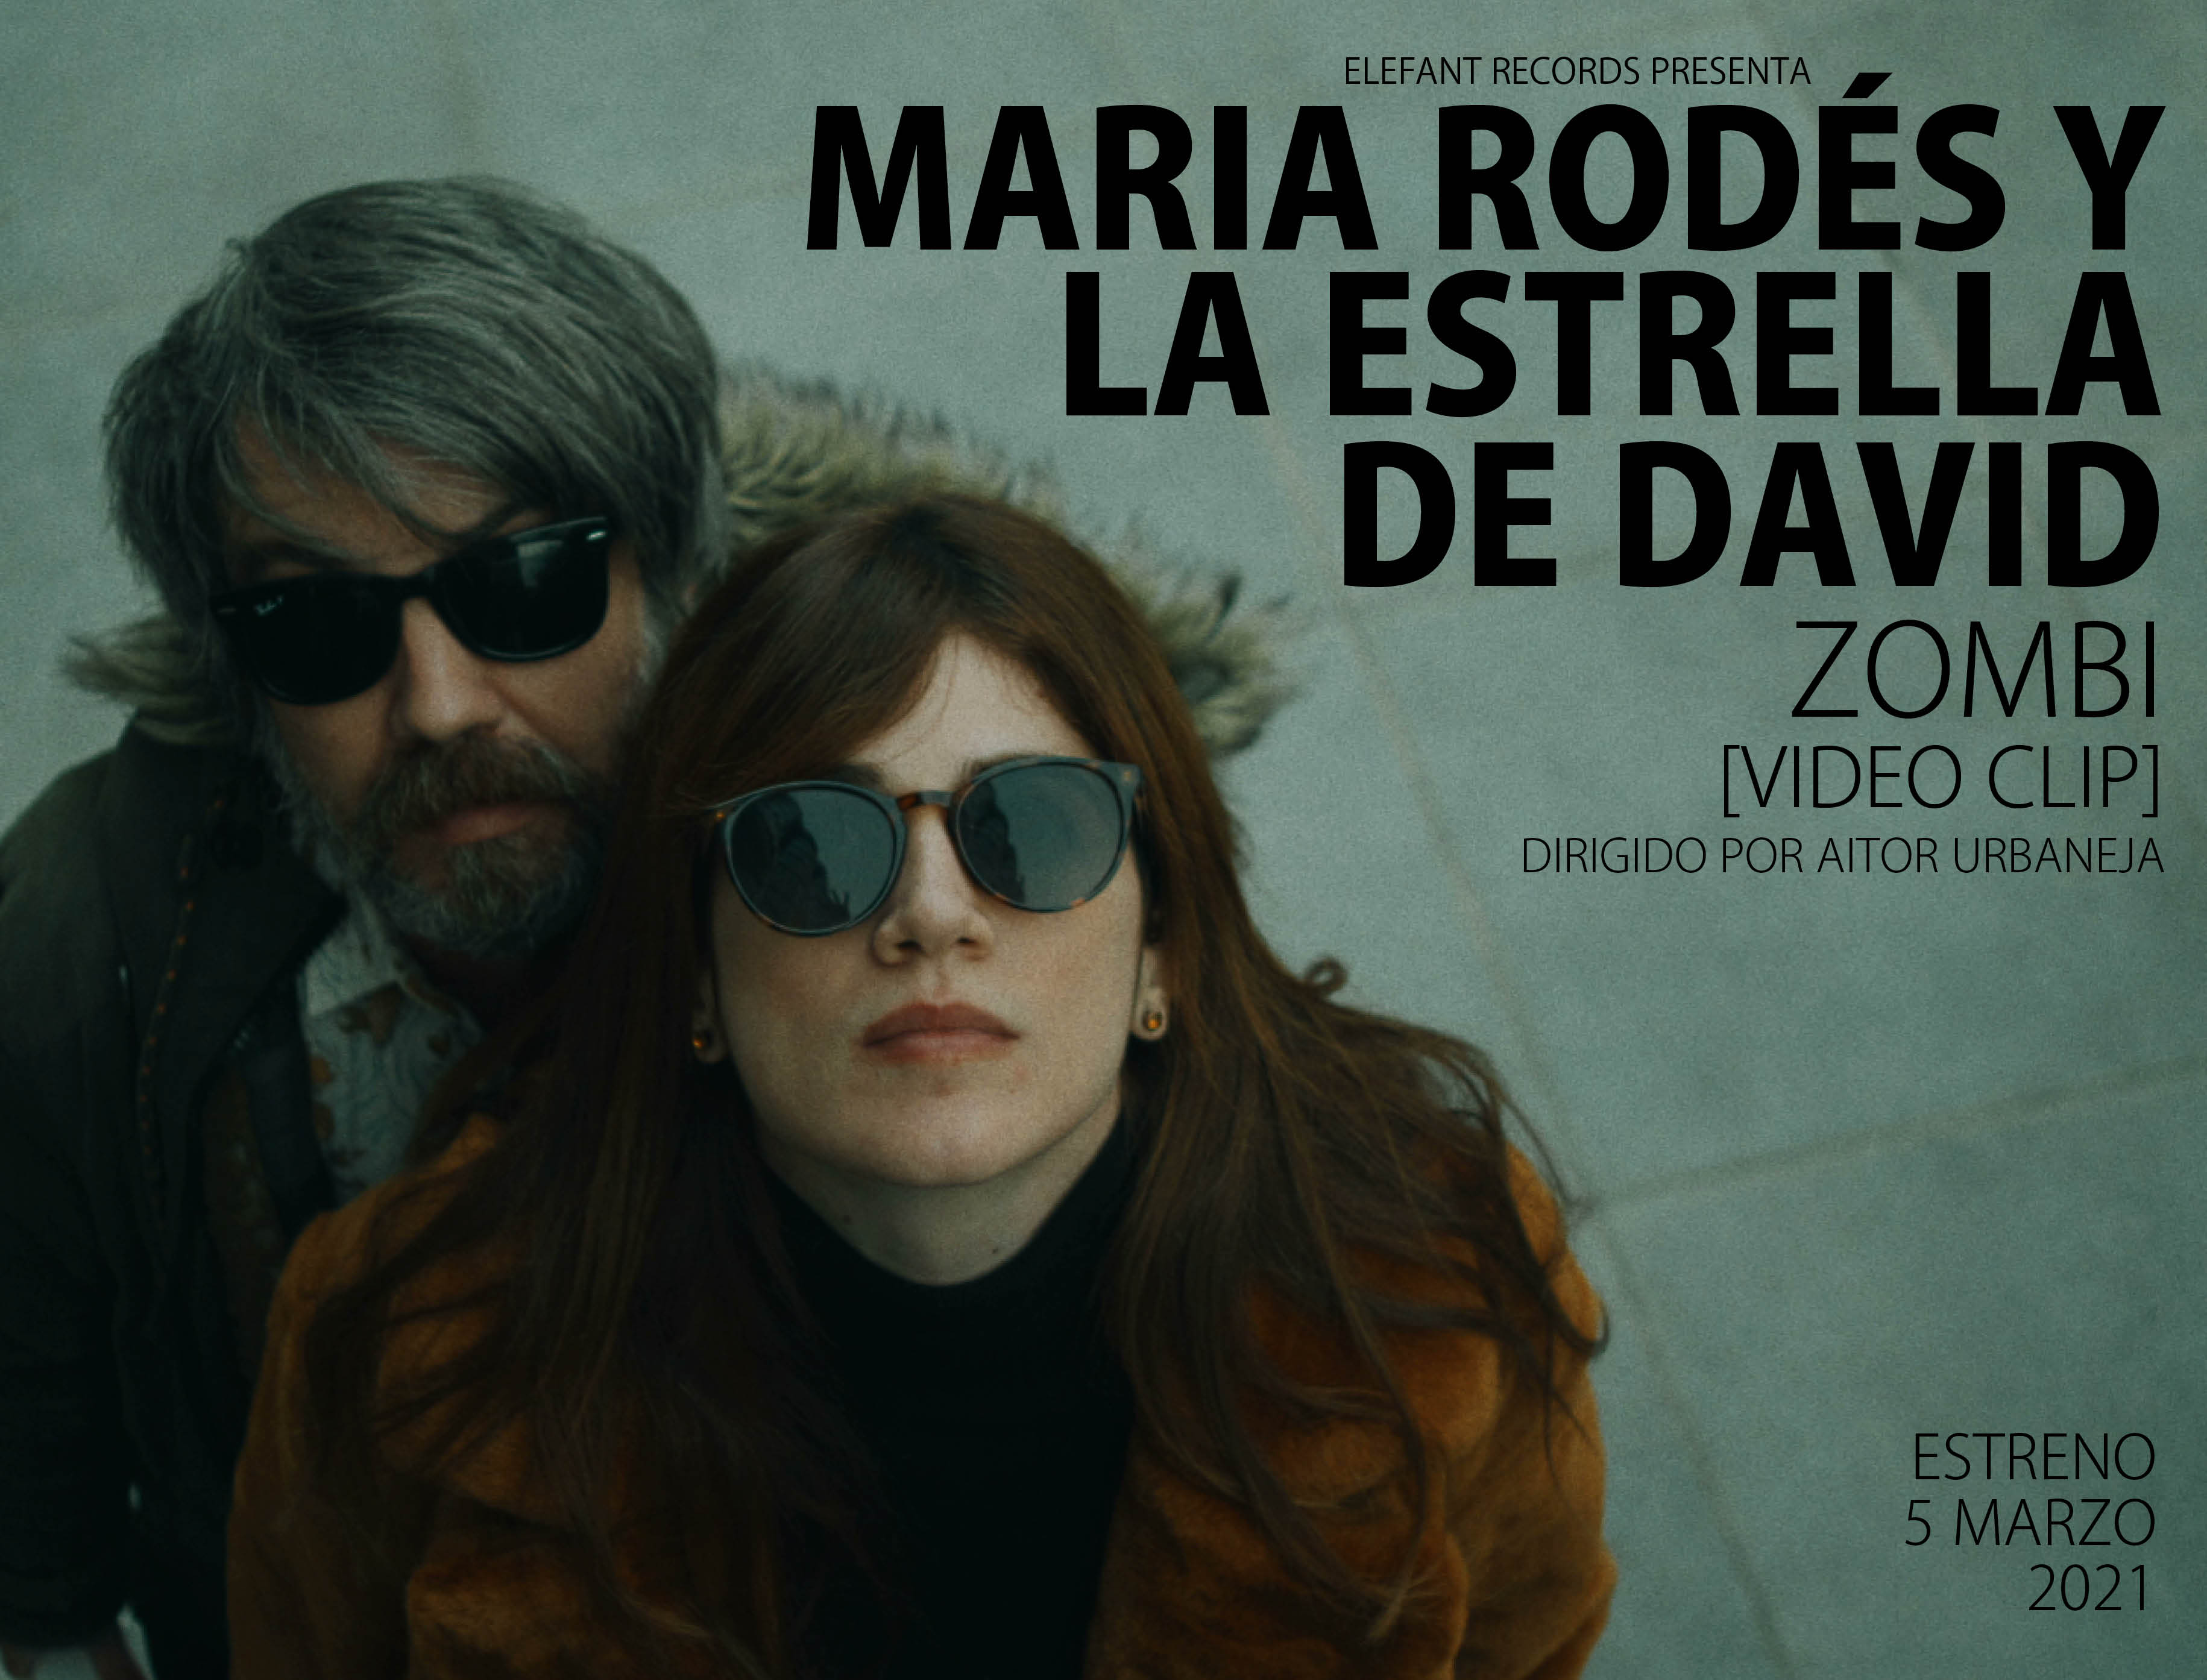 Maria Rodés Y La Estrella De David "Zombie"